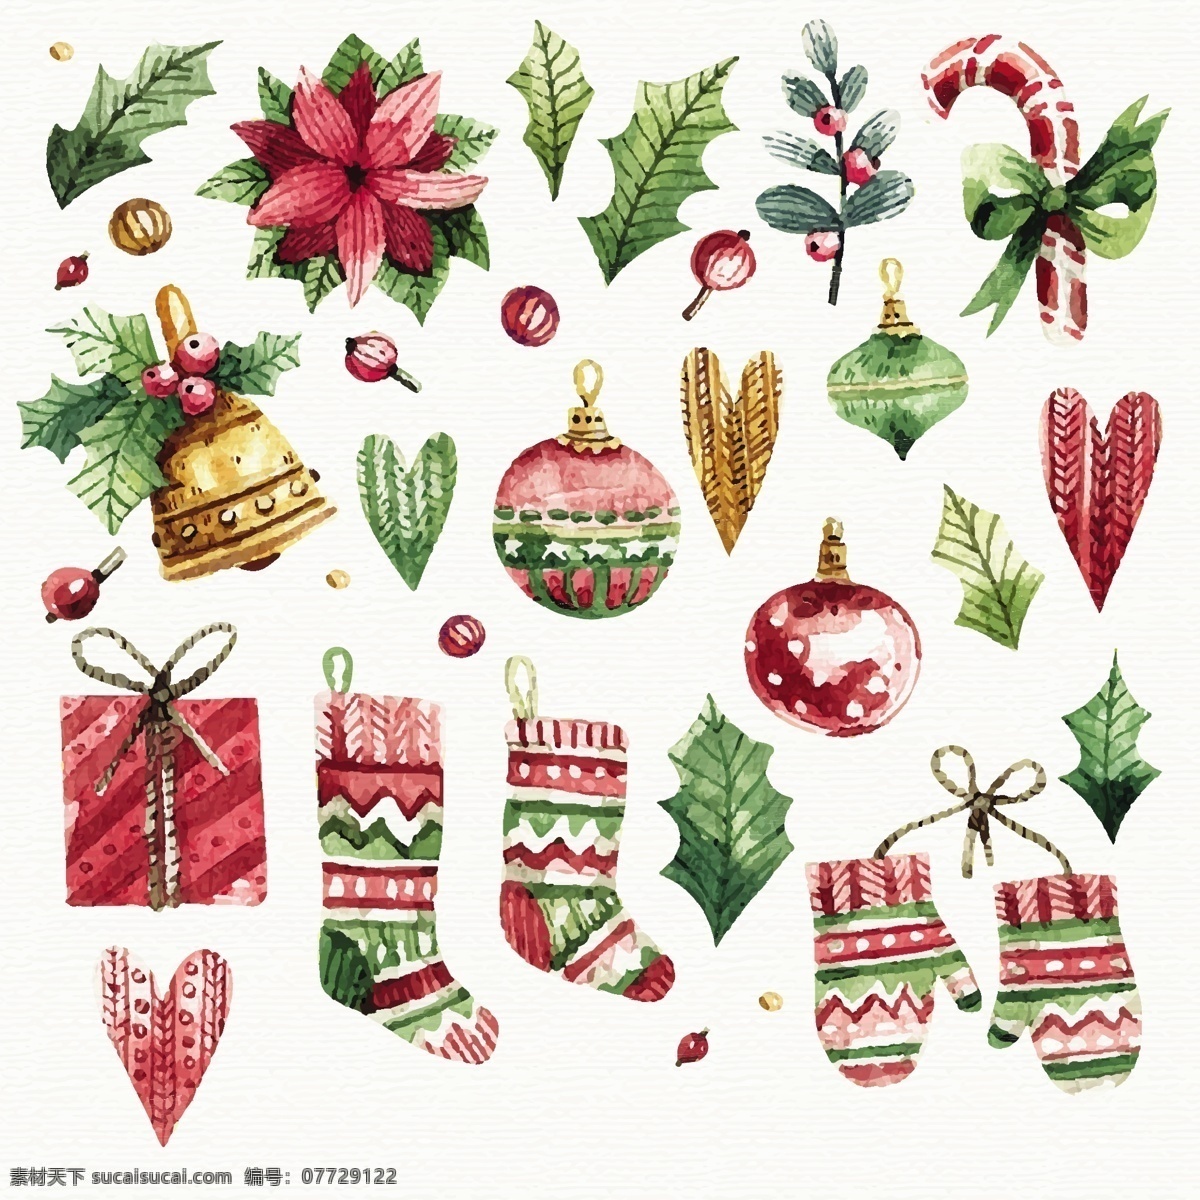 手绘 圣诞 物品 装饰 2018 圣诞节 节日素材 铃铛 圣诞素材 圣诞物品 圣诞元素 圣诞装饰 树叶 袜子礼物